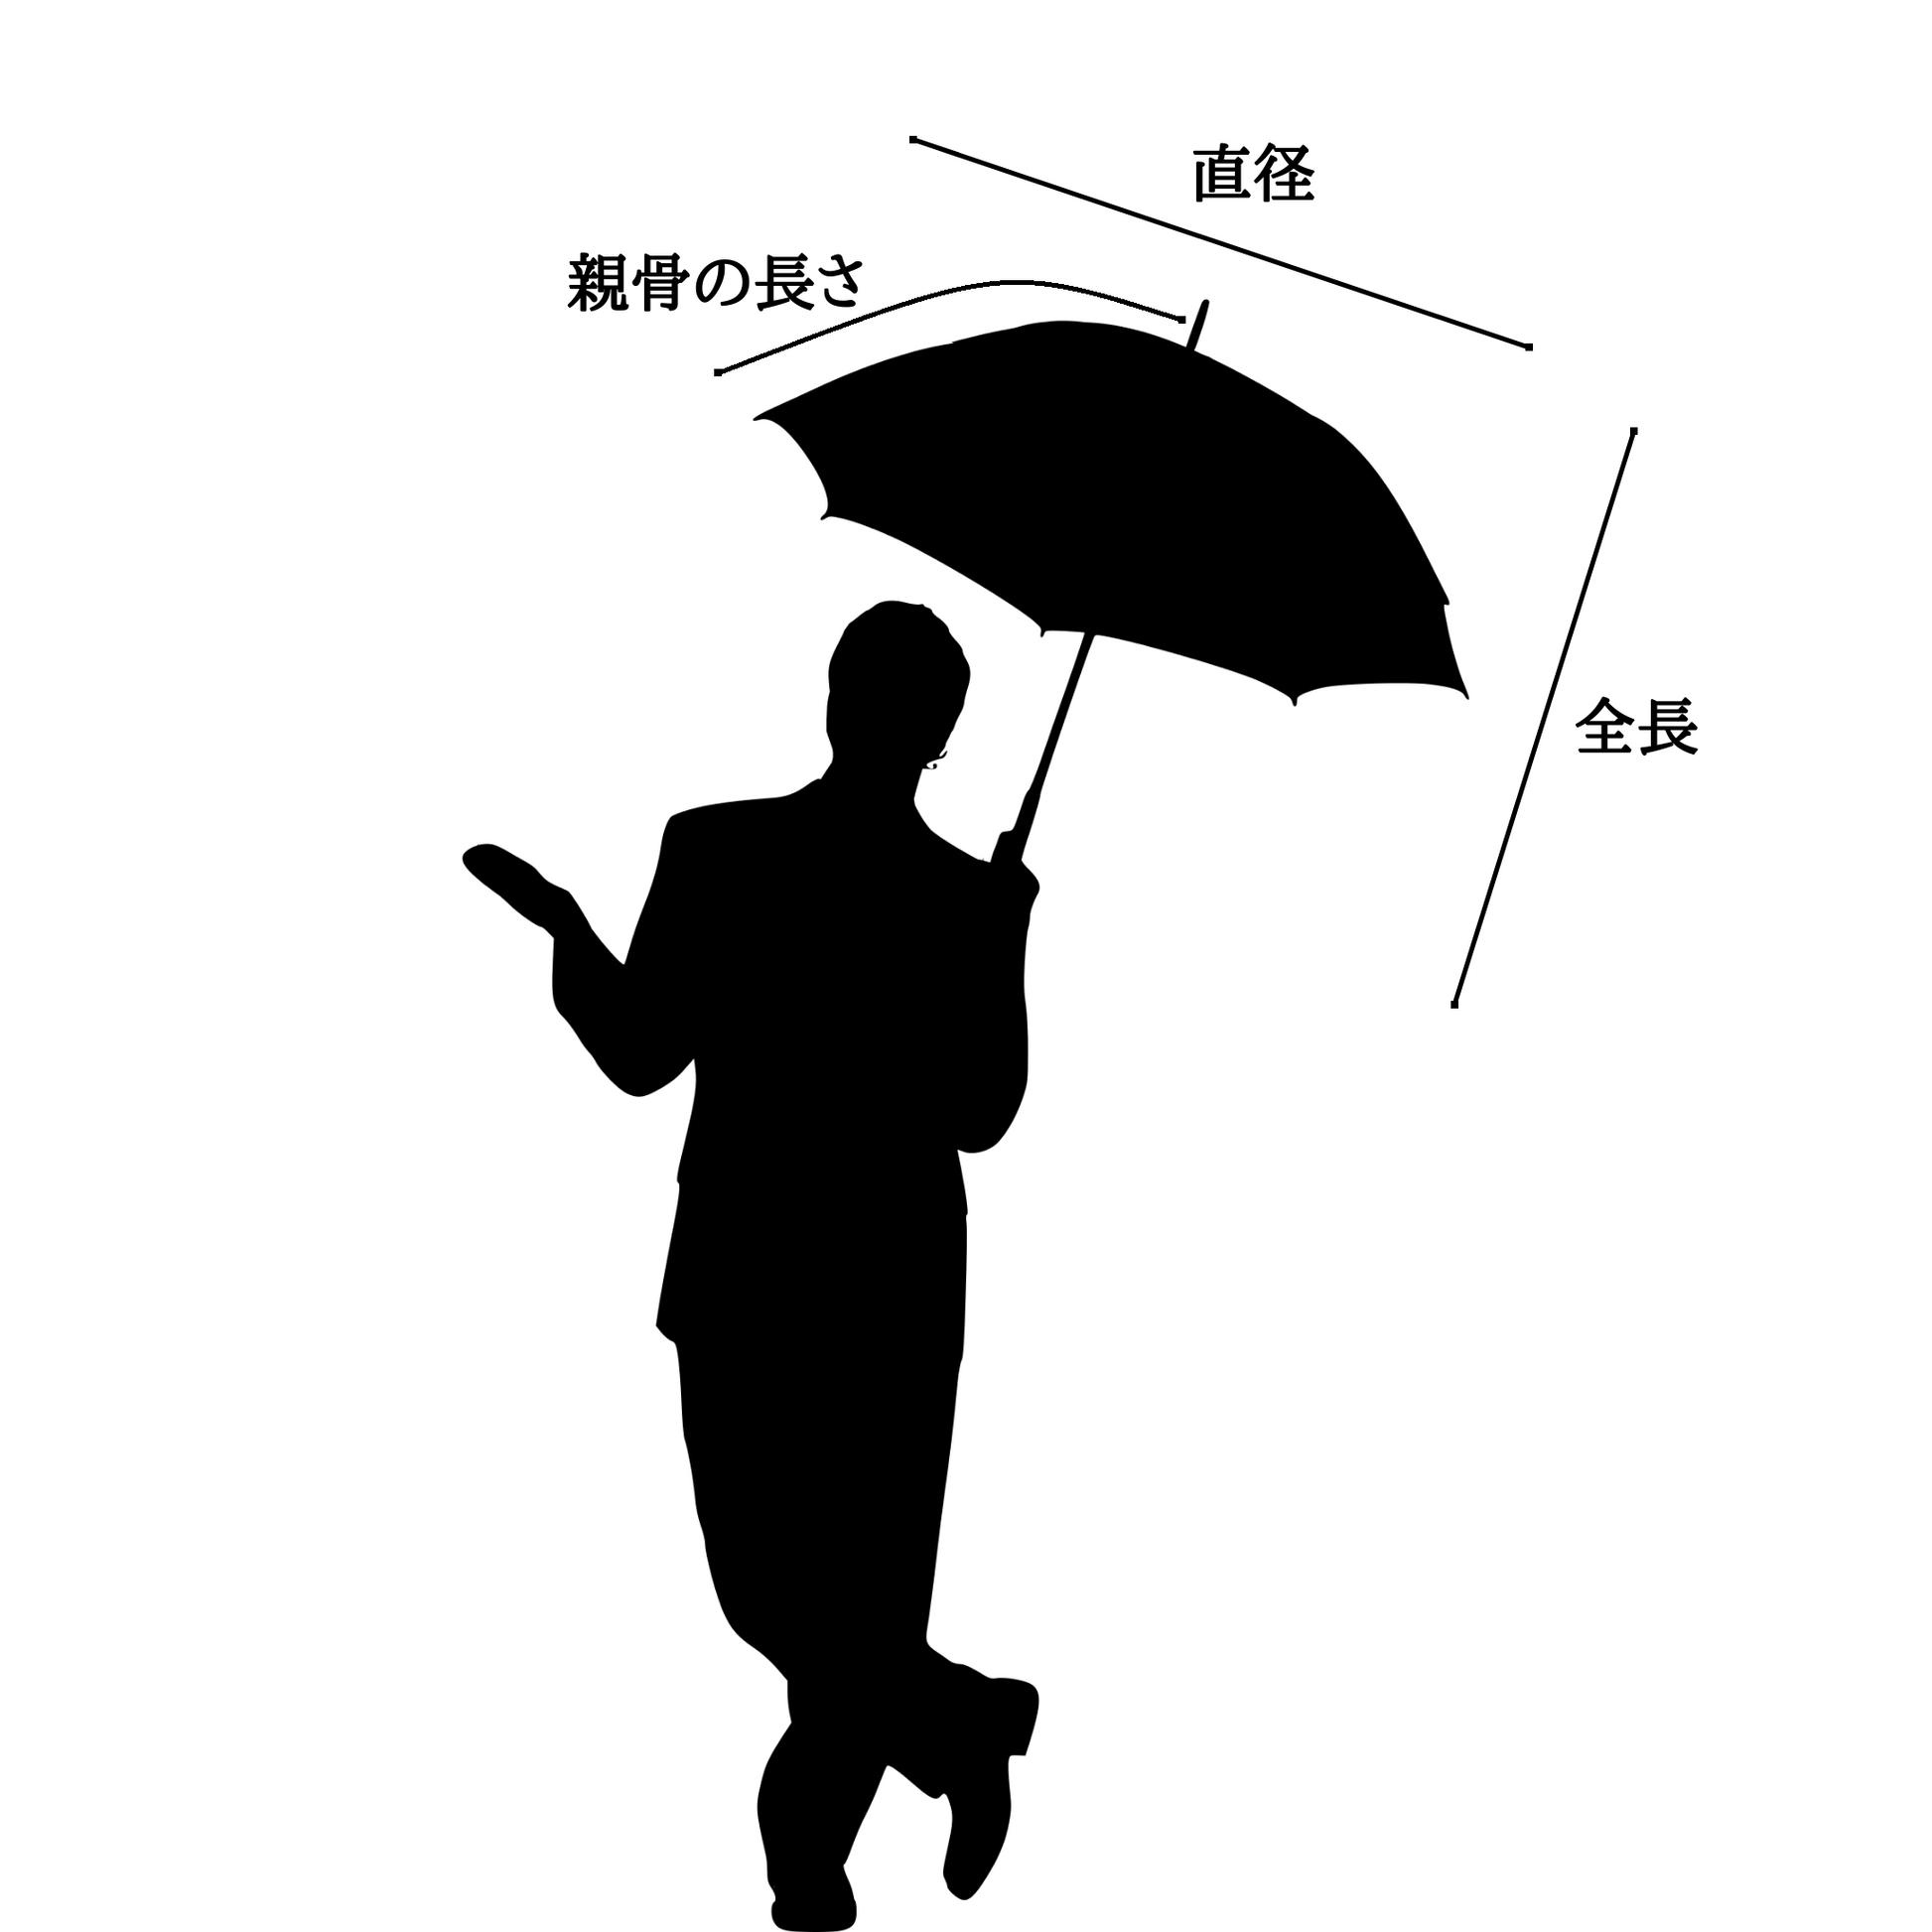 極細しな布日傘